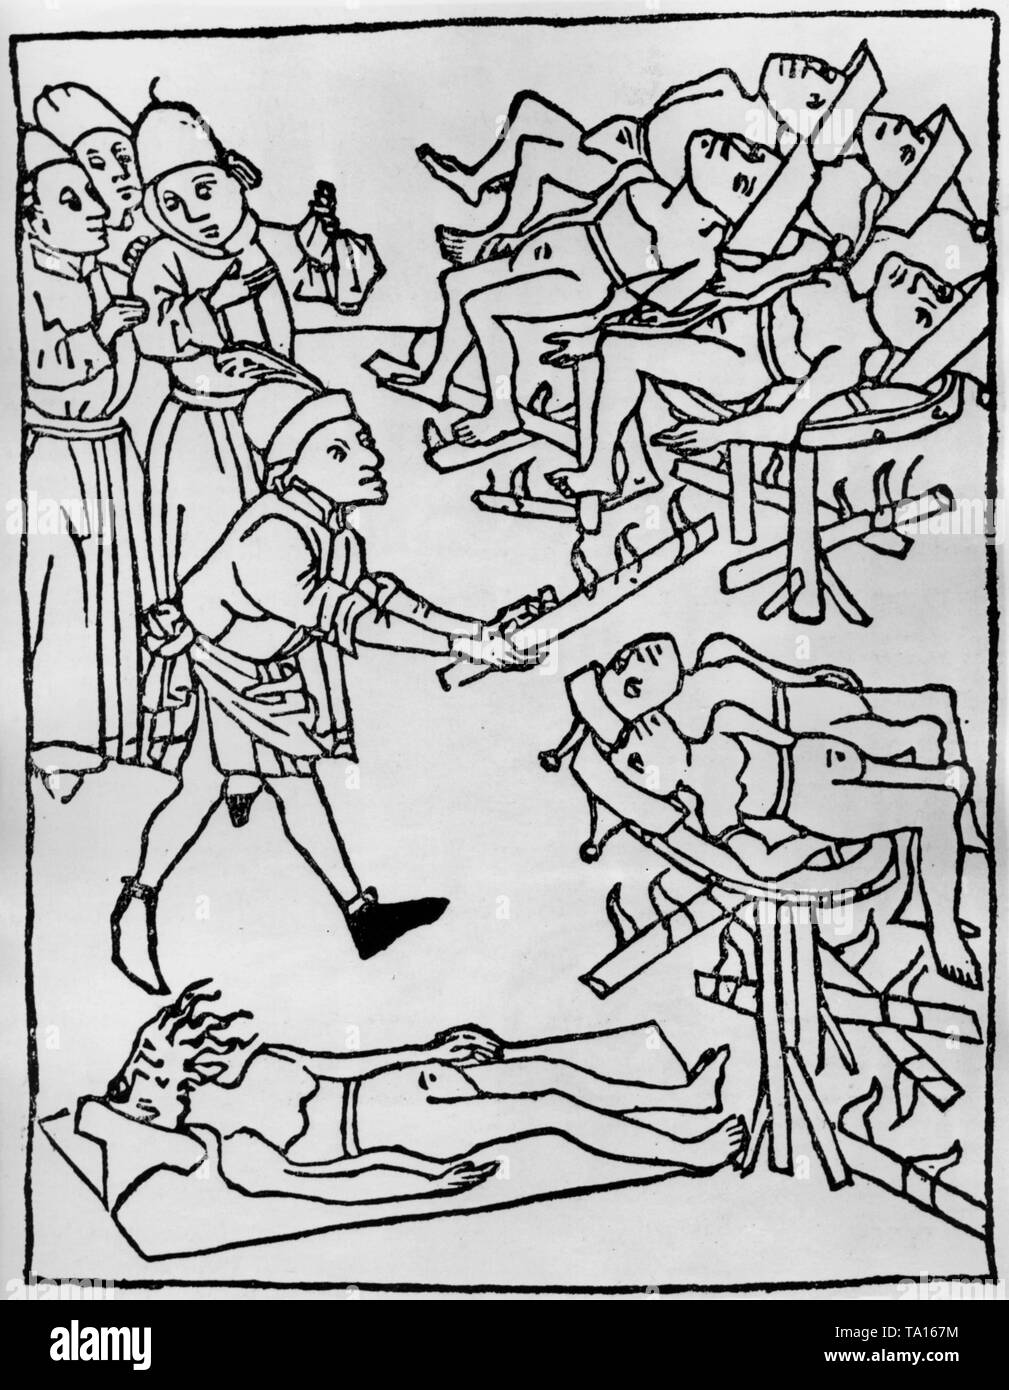 Gli ebrei sono torturati su una ruota di rottura. Illustrazione / xilografia da 'Storia del bambino cristiano ucciso in Trento' (Trento 1475). Foto Stock